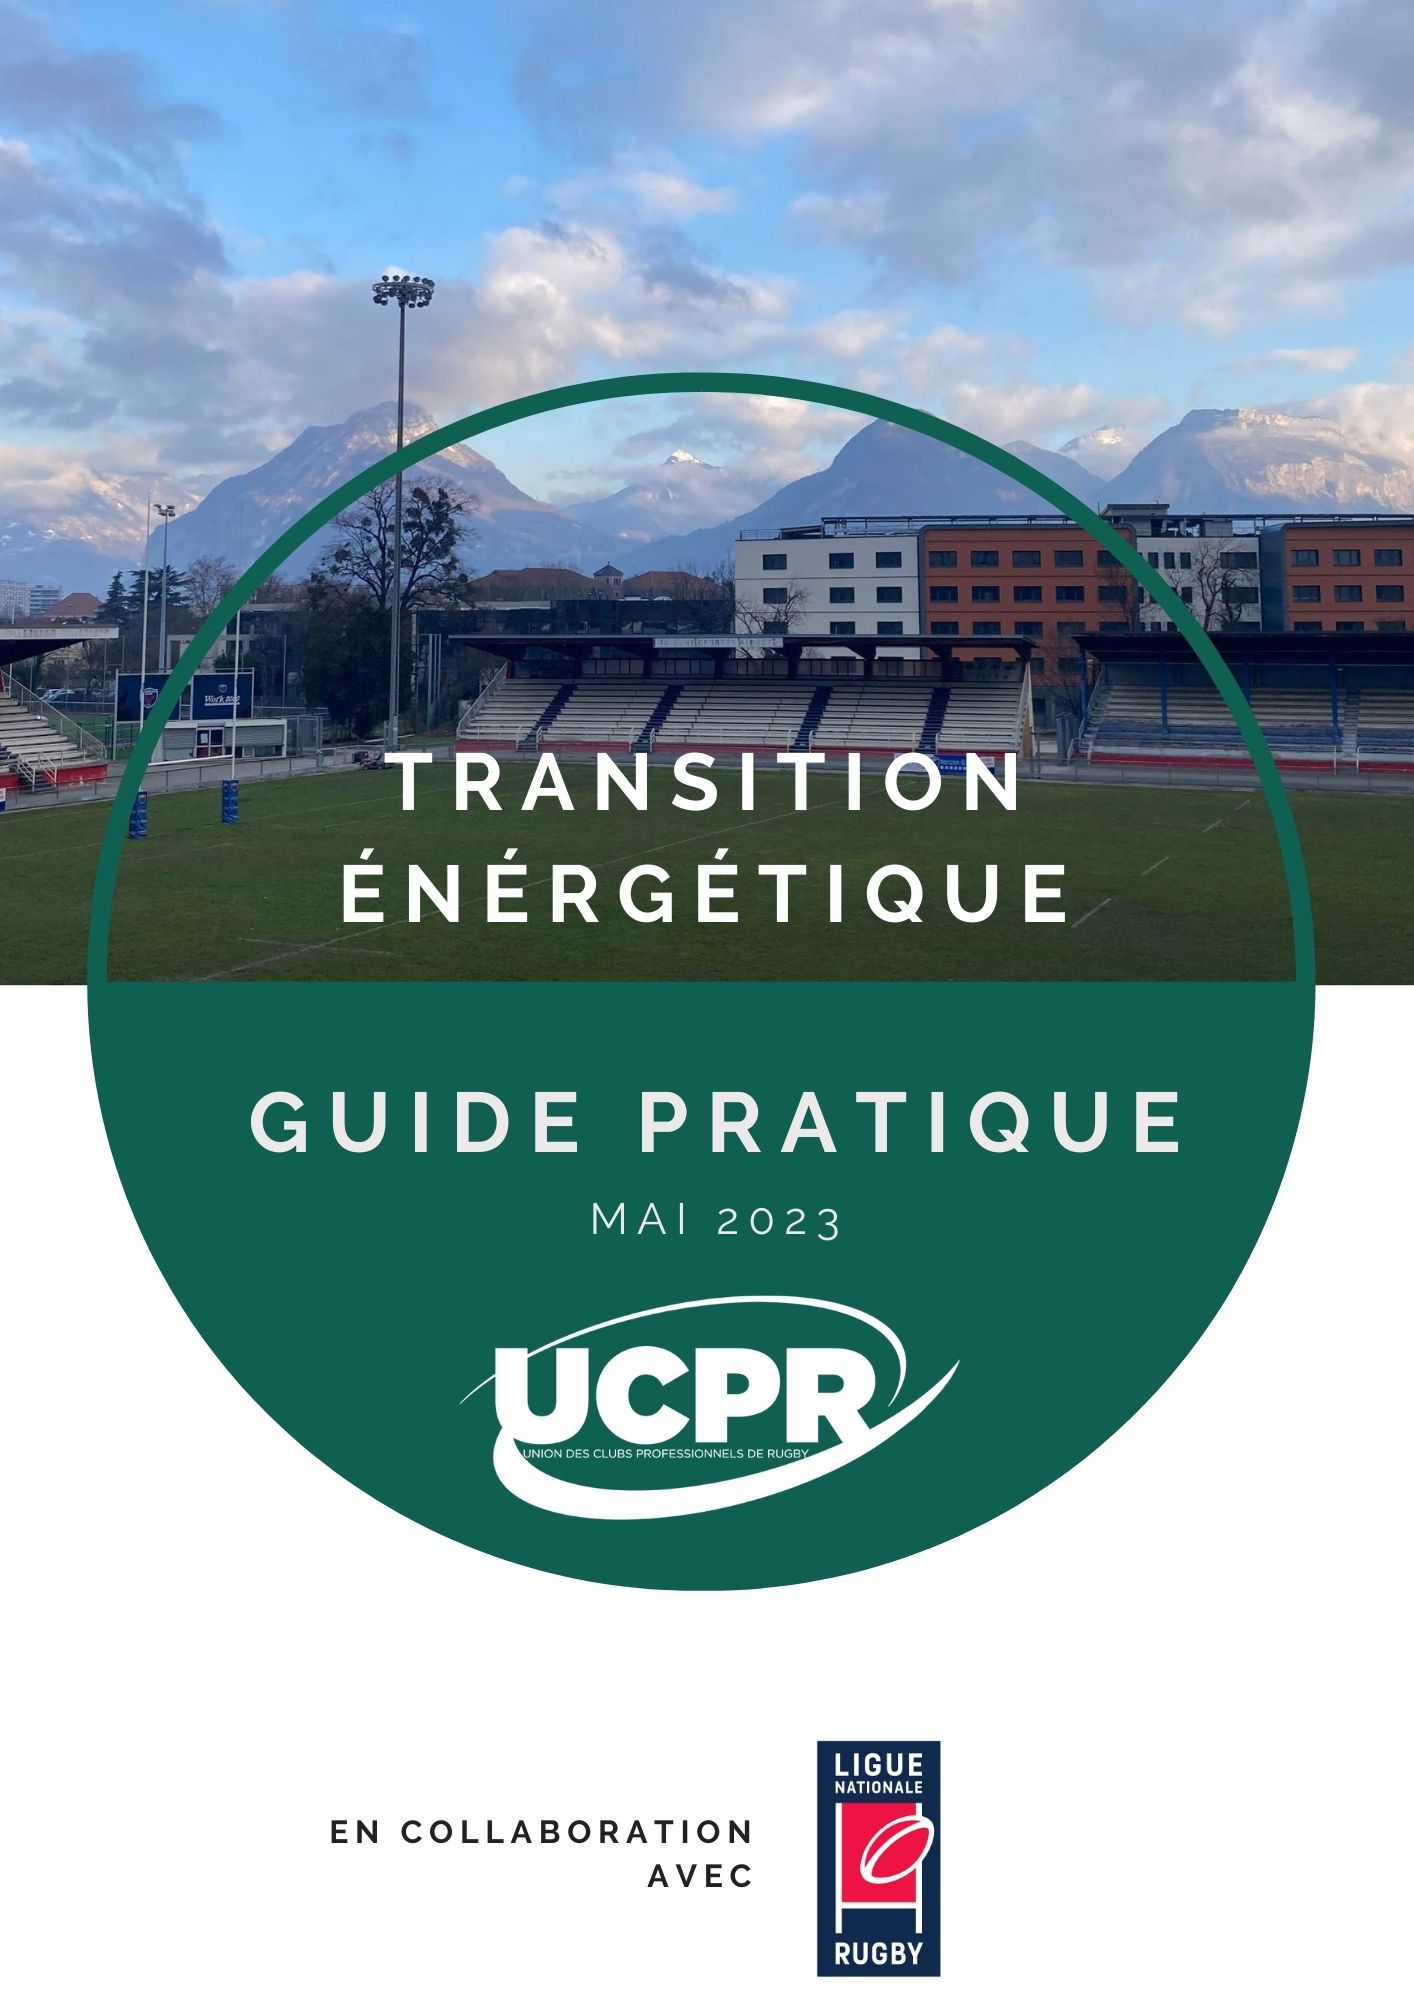 Guide transition énergétique et écologique